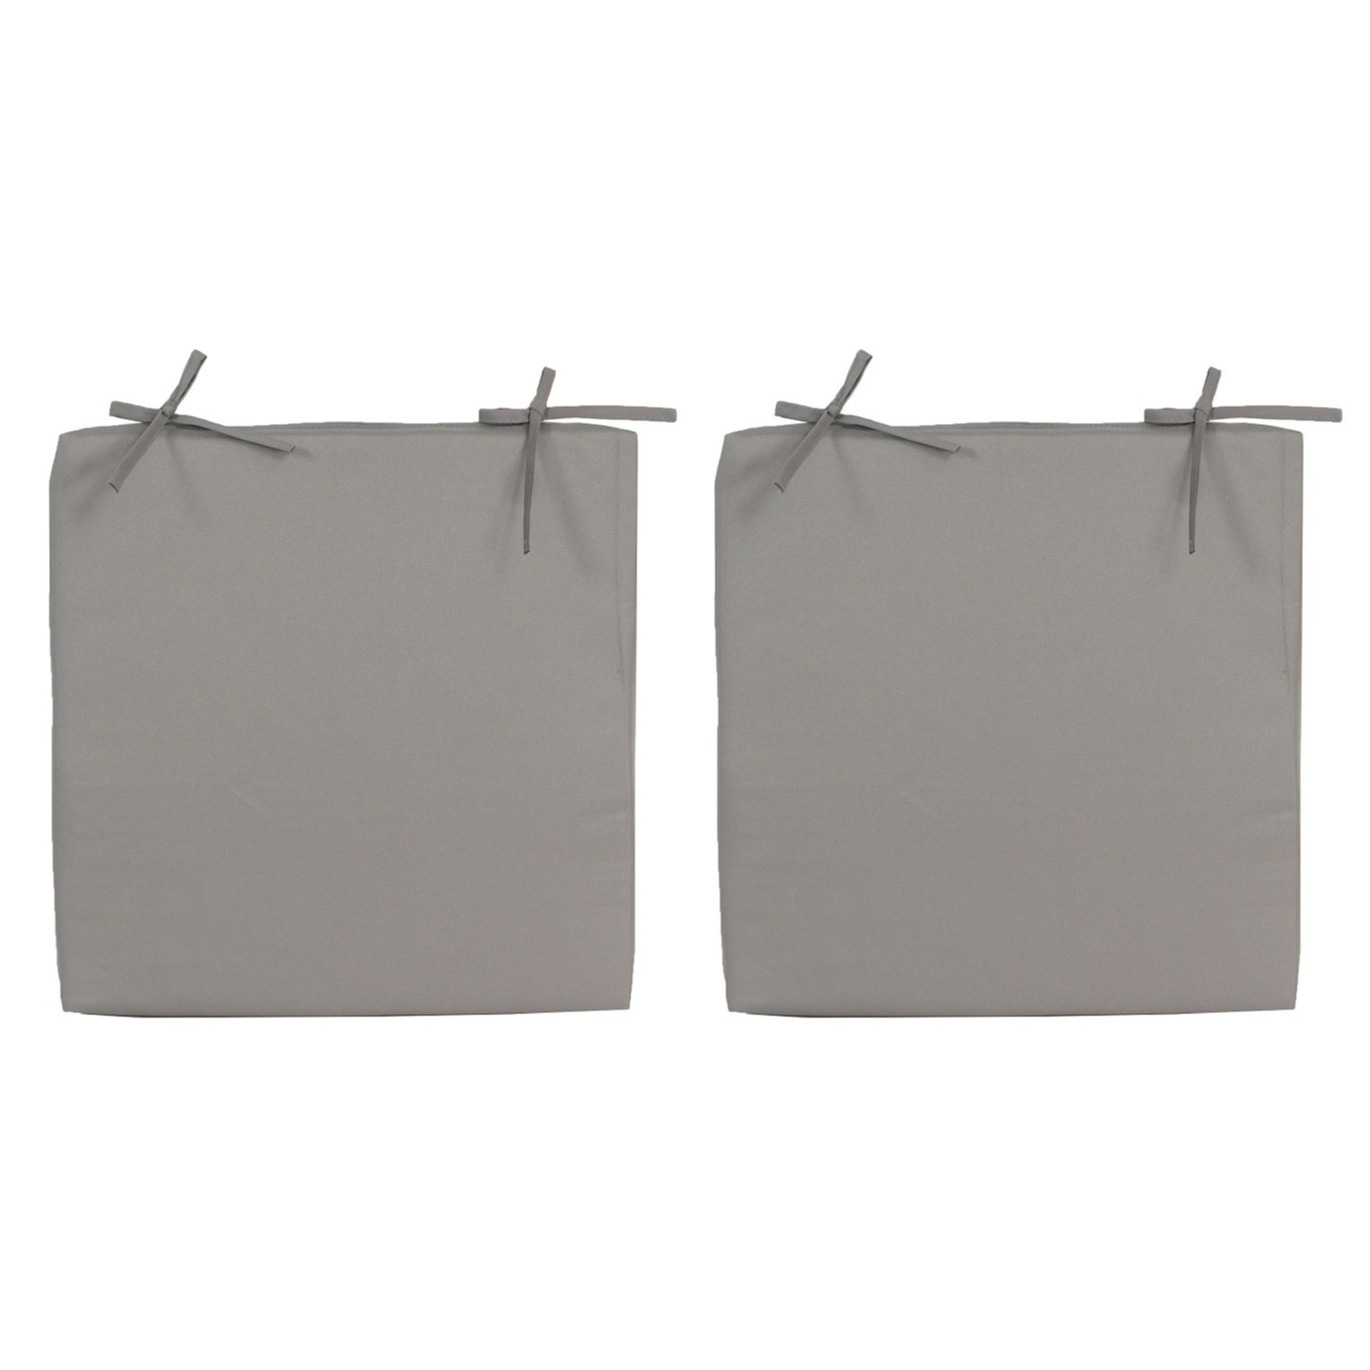 4x Stoelkussens voor binnen en buiten in de kleur grijs 40 x 40 cm Tuinkussens voor buitenstoelen.